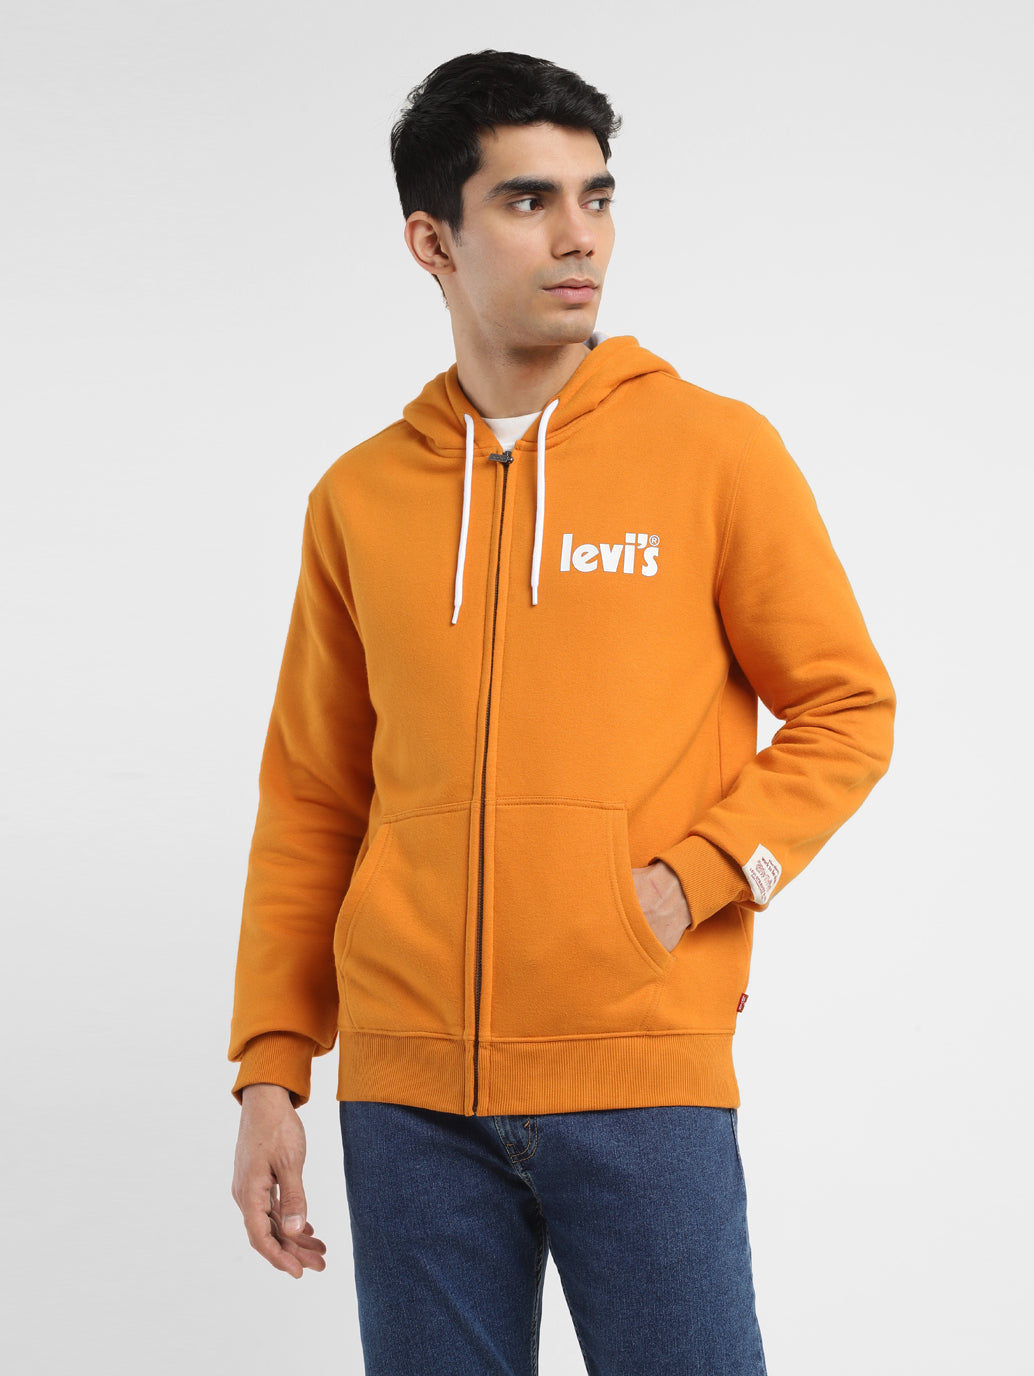 Men's Solid Orange Crew Neck Sweatshirt – Levis India Store